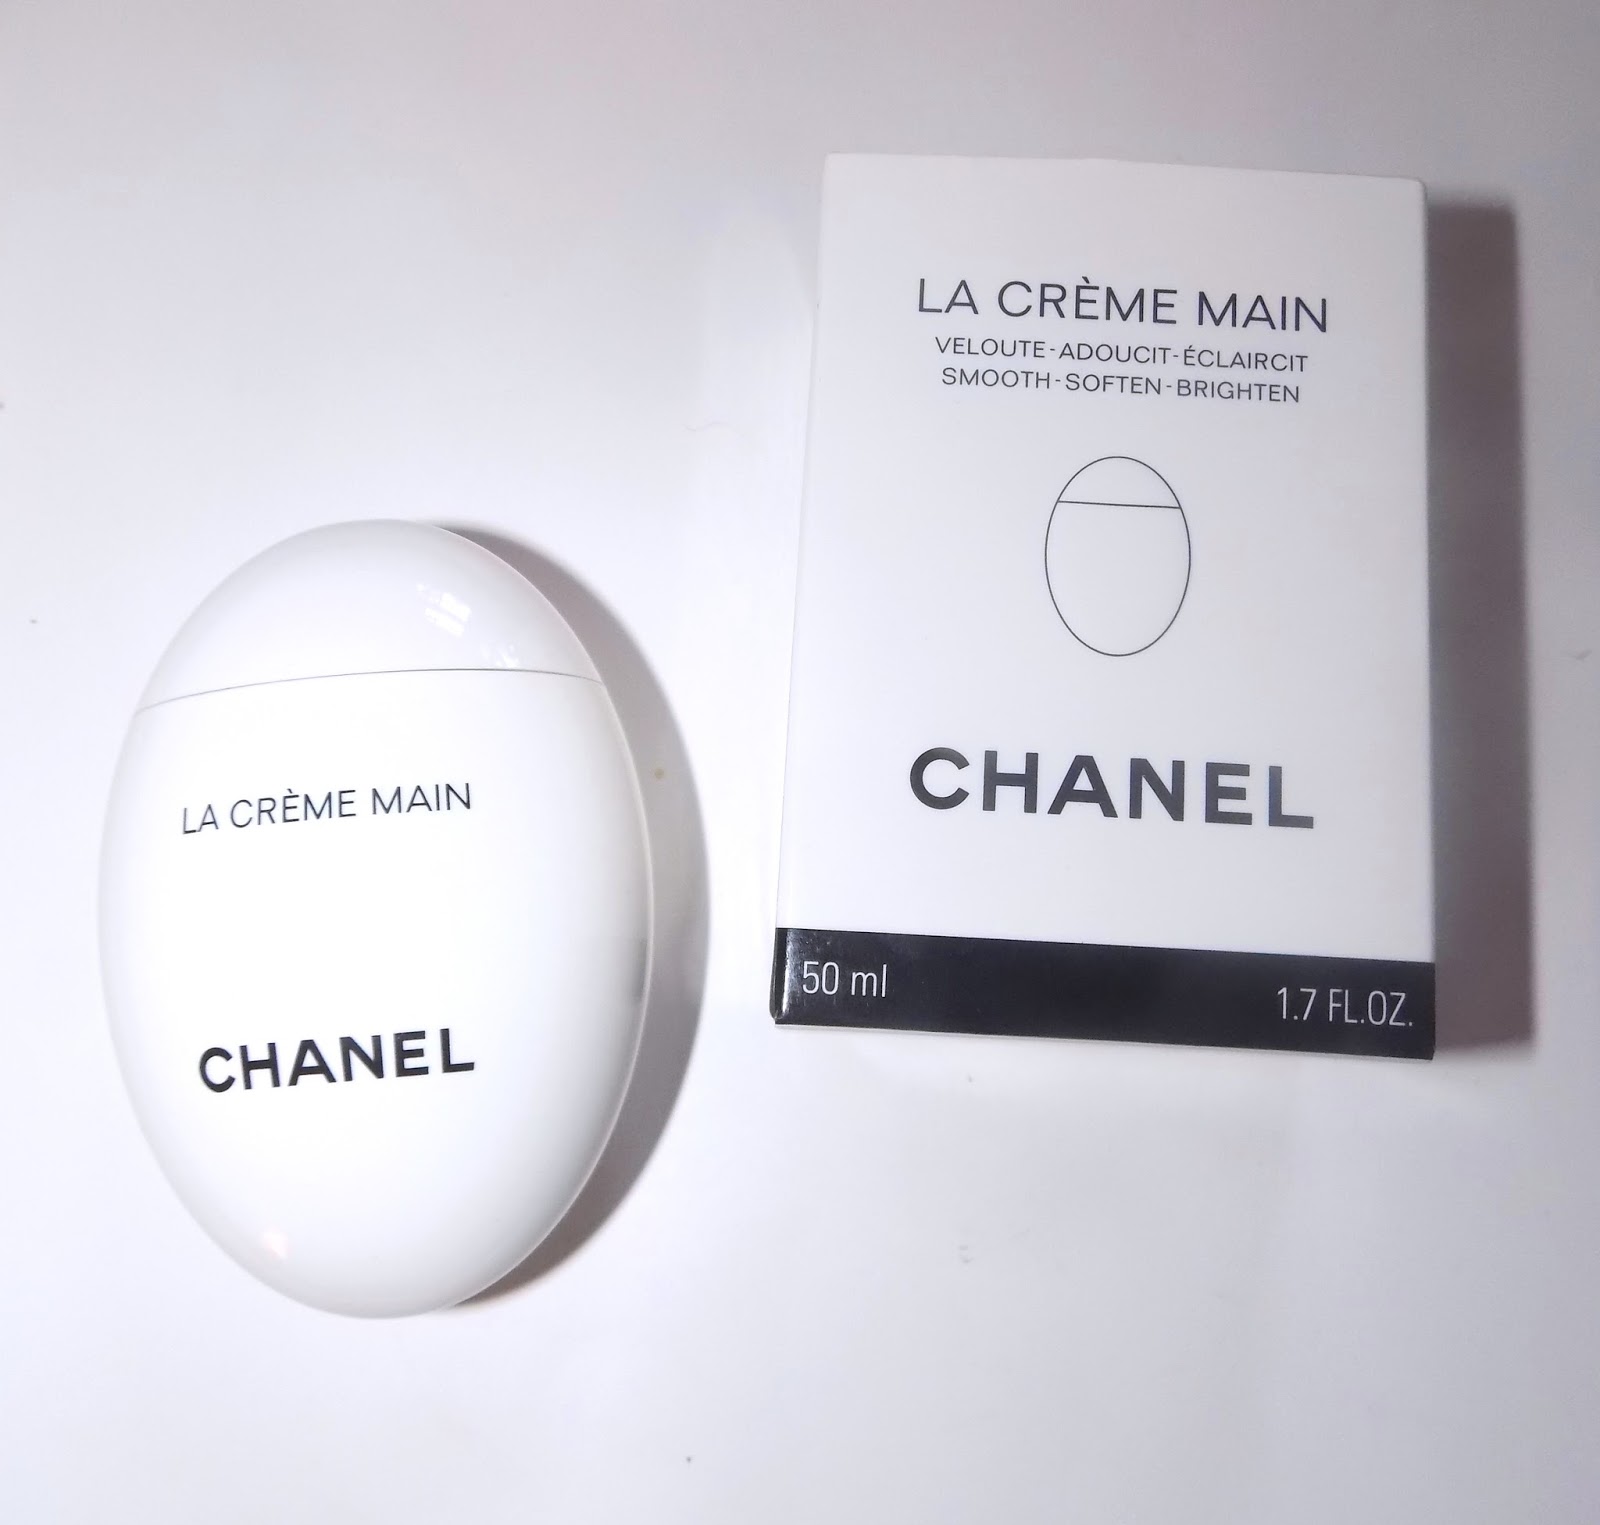 The Beauty Alchemist: Chanel La Creme Main Hand Cream